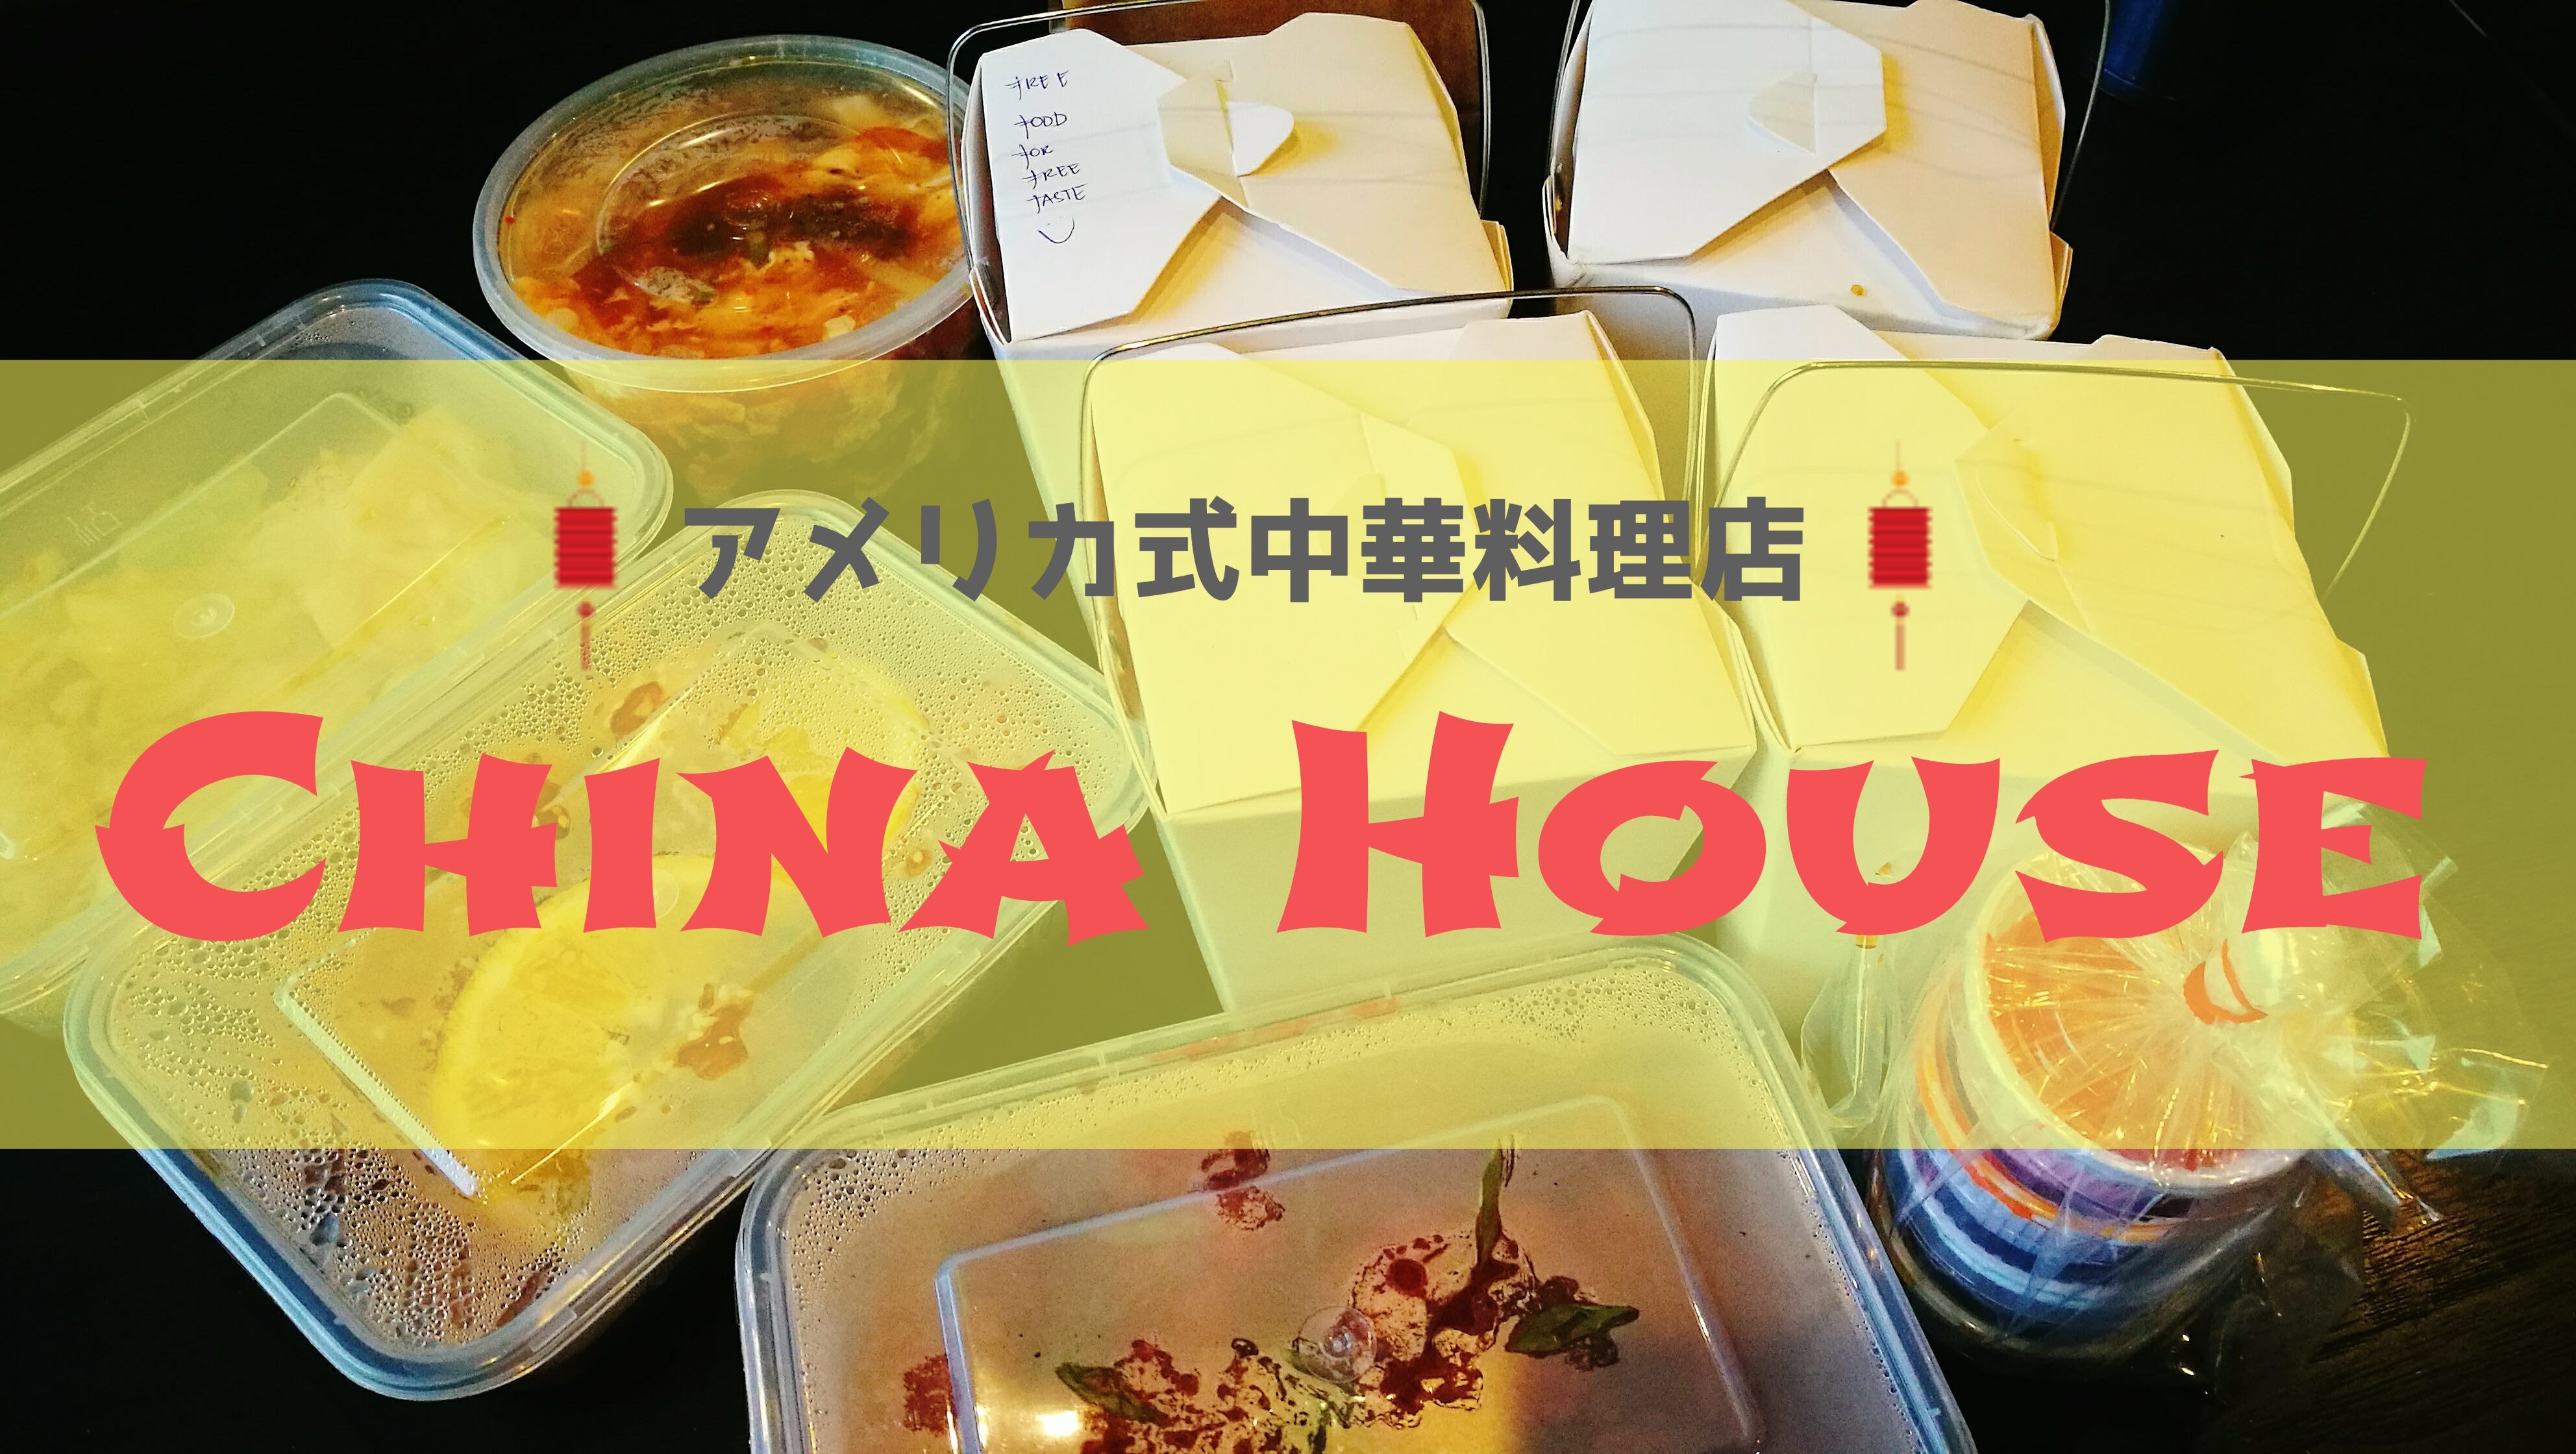 閉店 オンヌットのアメリカ式中華料理店 チャイナハウス China House